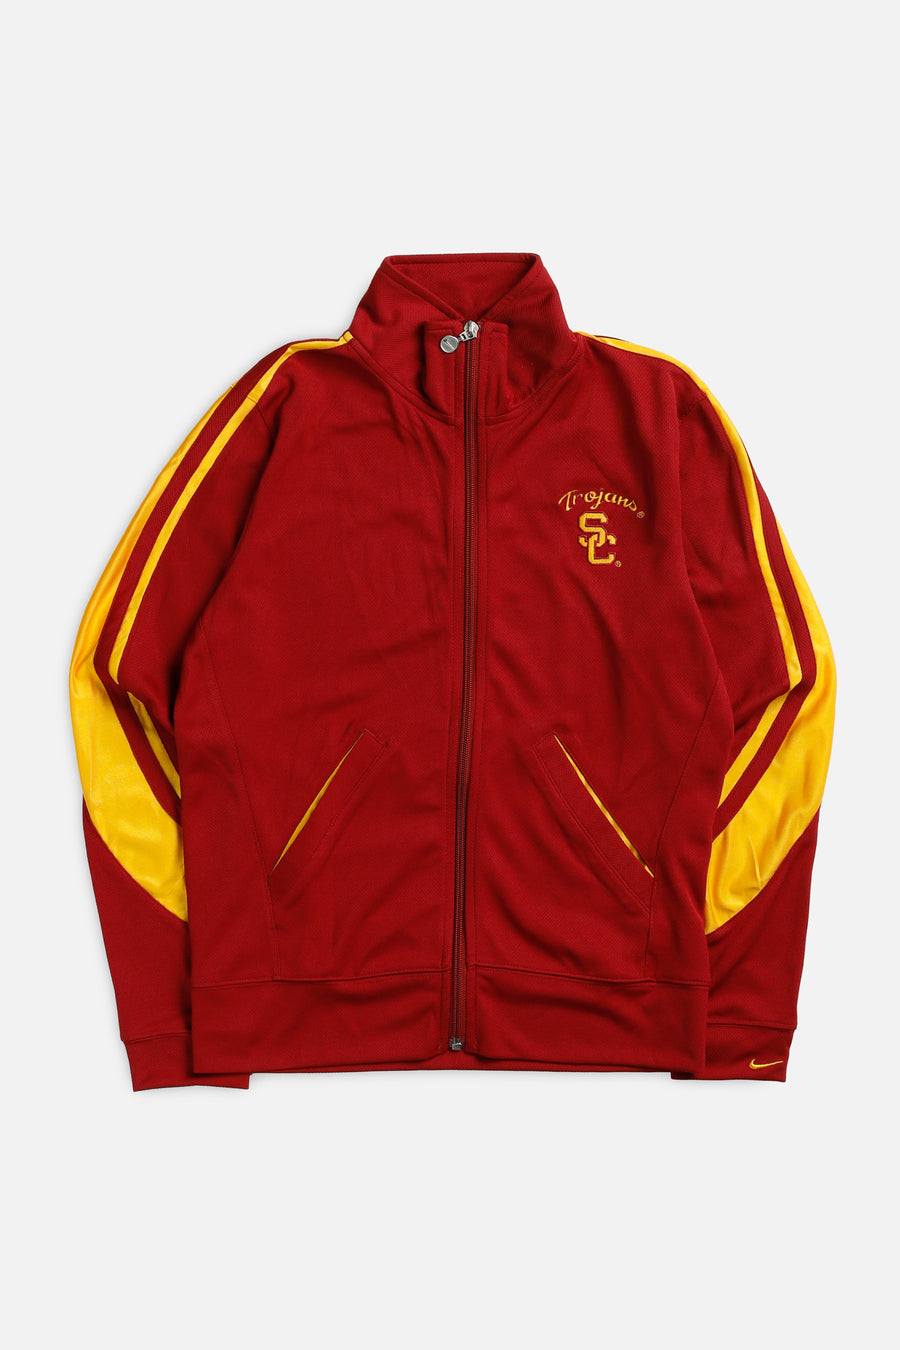 Vintage Nike USC Trojans Track Jacket - Women's S